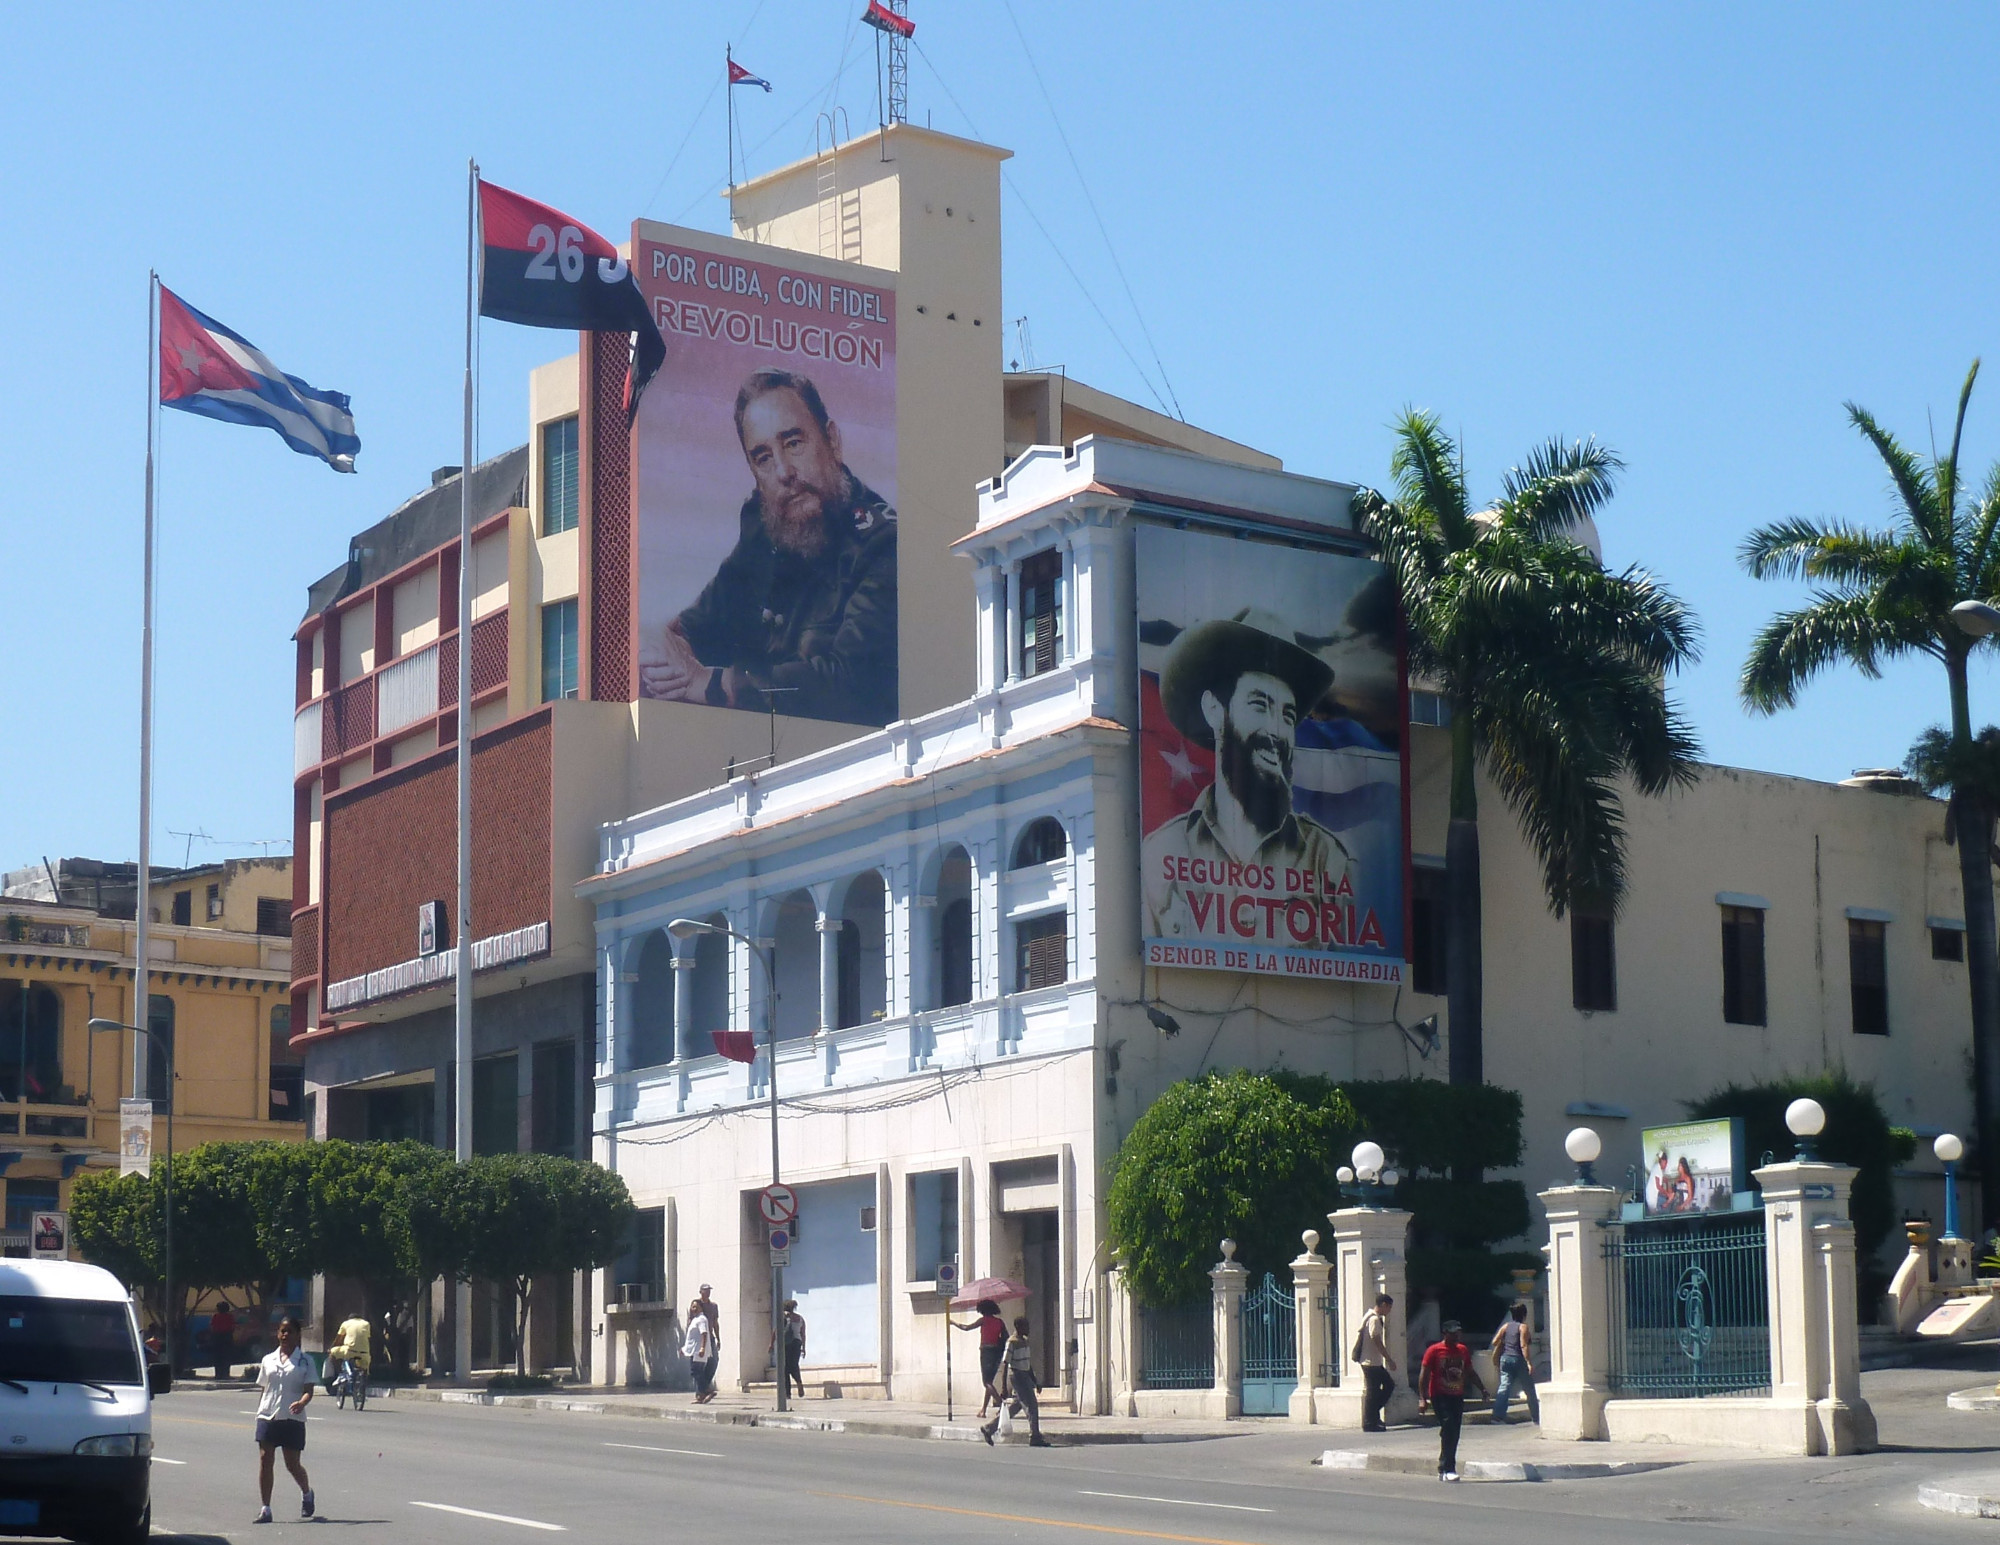 mages of Fidel Castro and Camilo Cienfuegos in the CODESA building 